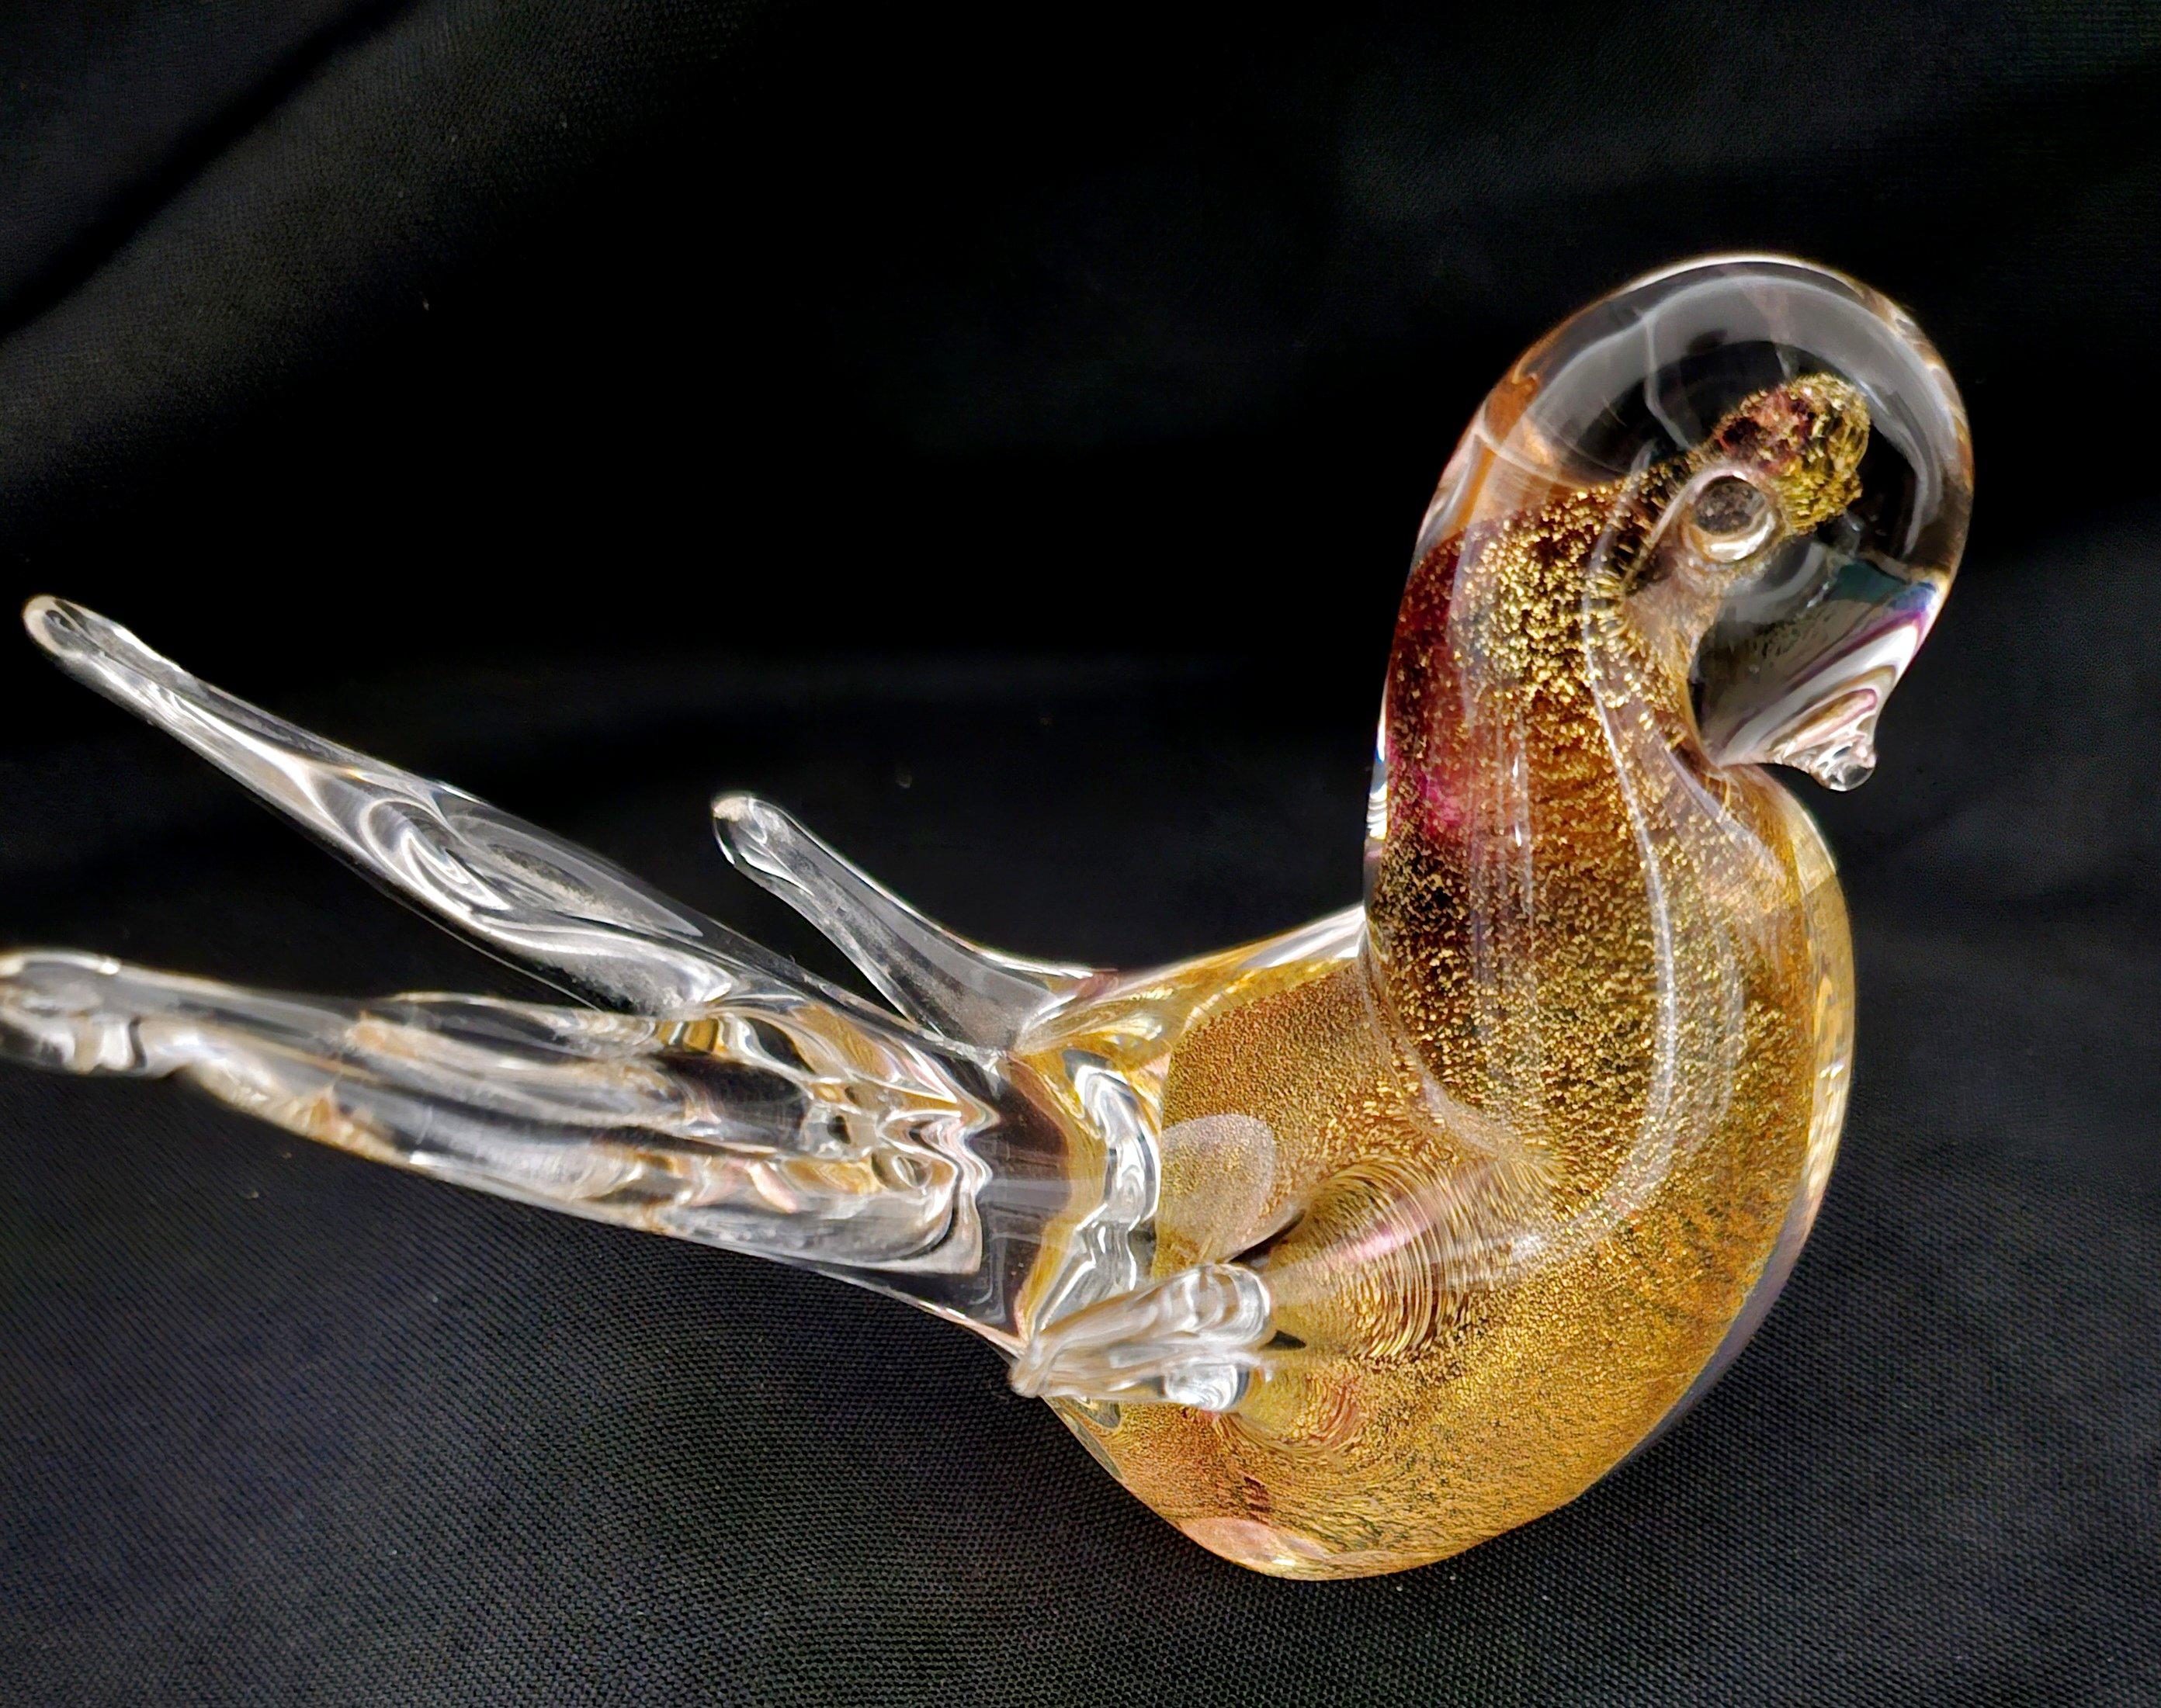 Vintage Murano Glass Bird with Gold Polveri, by Rubelli

Un joli petit oiseau infusé d'or, par l'artiste verrier de Murano Giampaolo Rubelli. 
Très bon état vintage !

Les couleurs ont tendance à paraître plus riches sur un fond sombre que sur un